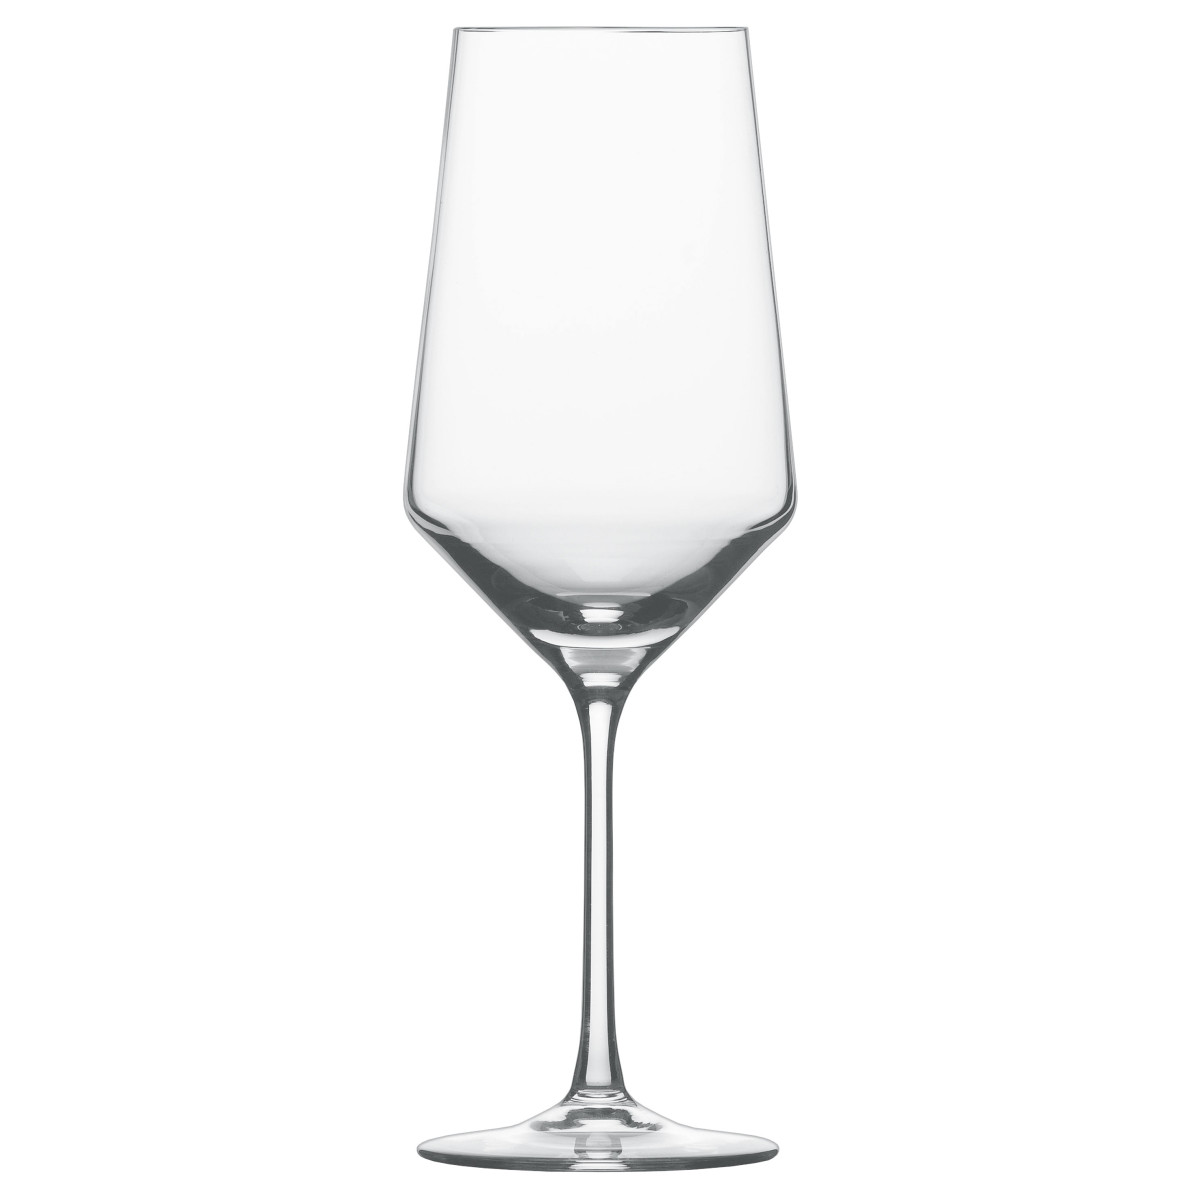 Zwiesel Glas Pure Cabernet / Bordeaux, Set of 6